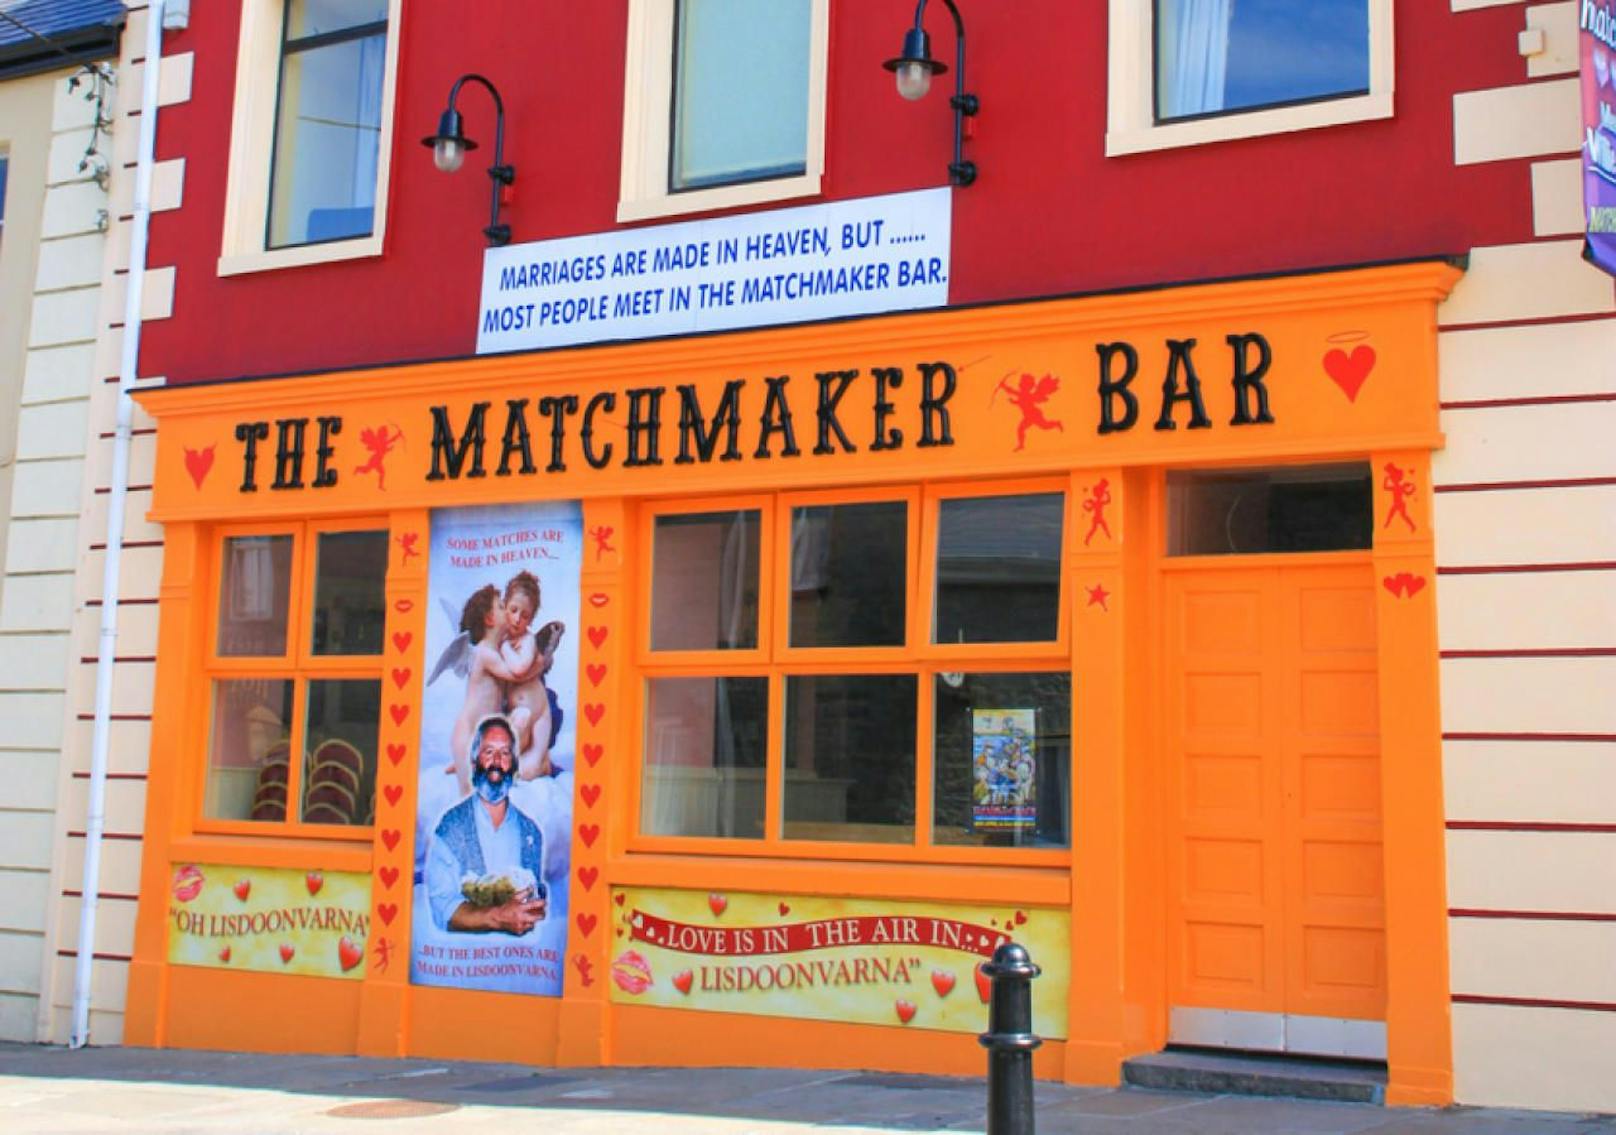 Lisdoonvarna in Irland: Jedes Jahr findet hier das Matchmaking Festival statt. 